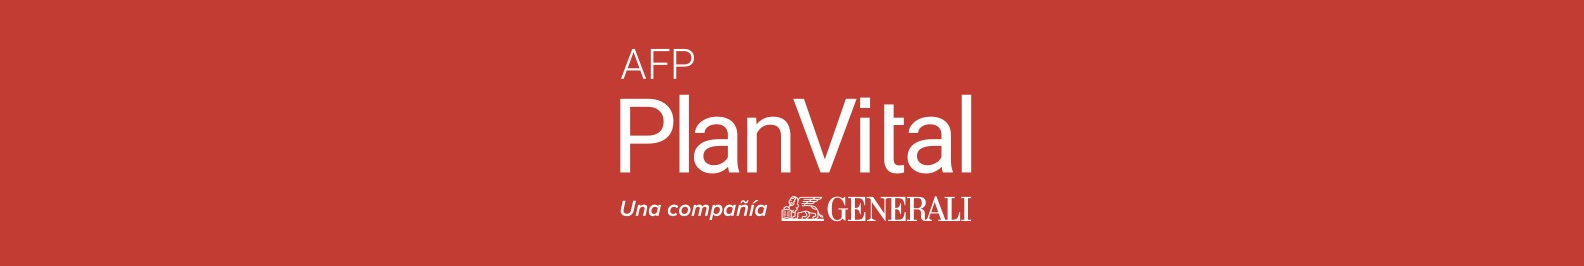 AFP PlanVital background